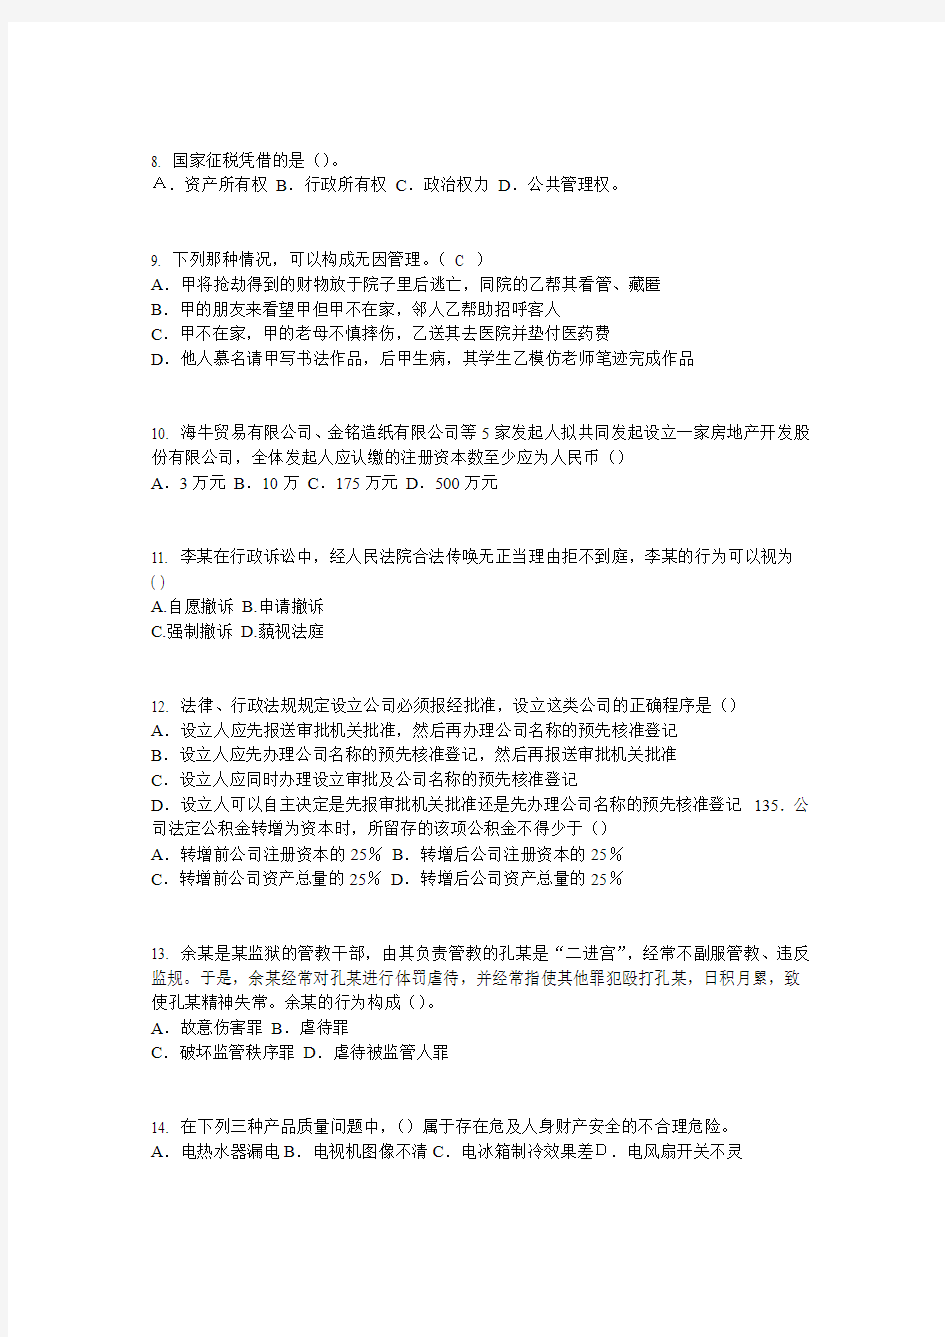 2015年广东省企业法律顾问考试《企业法律实务》考试试题